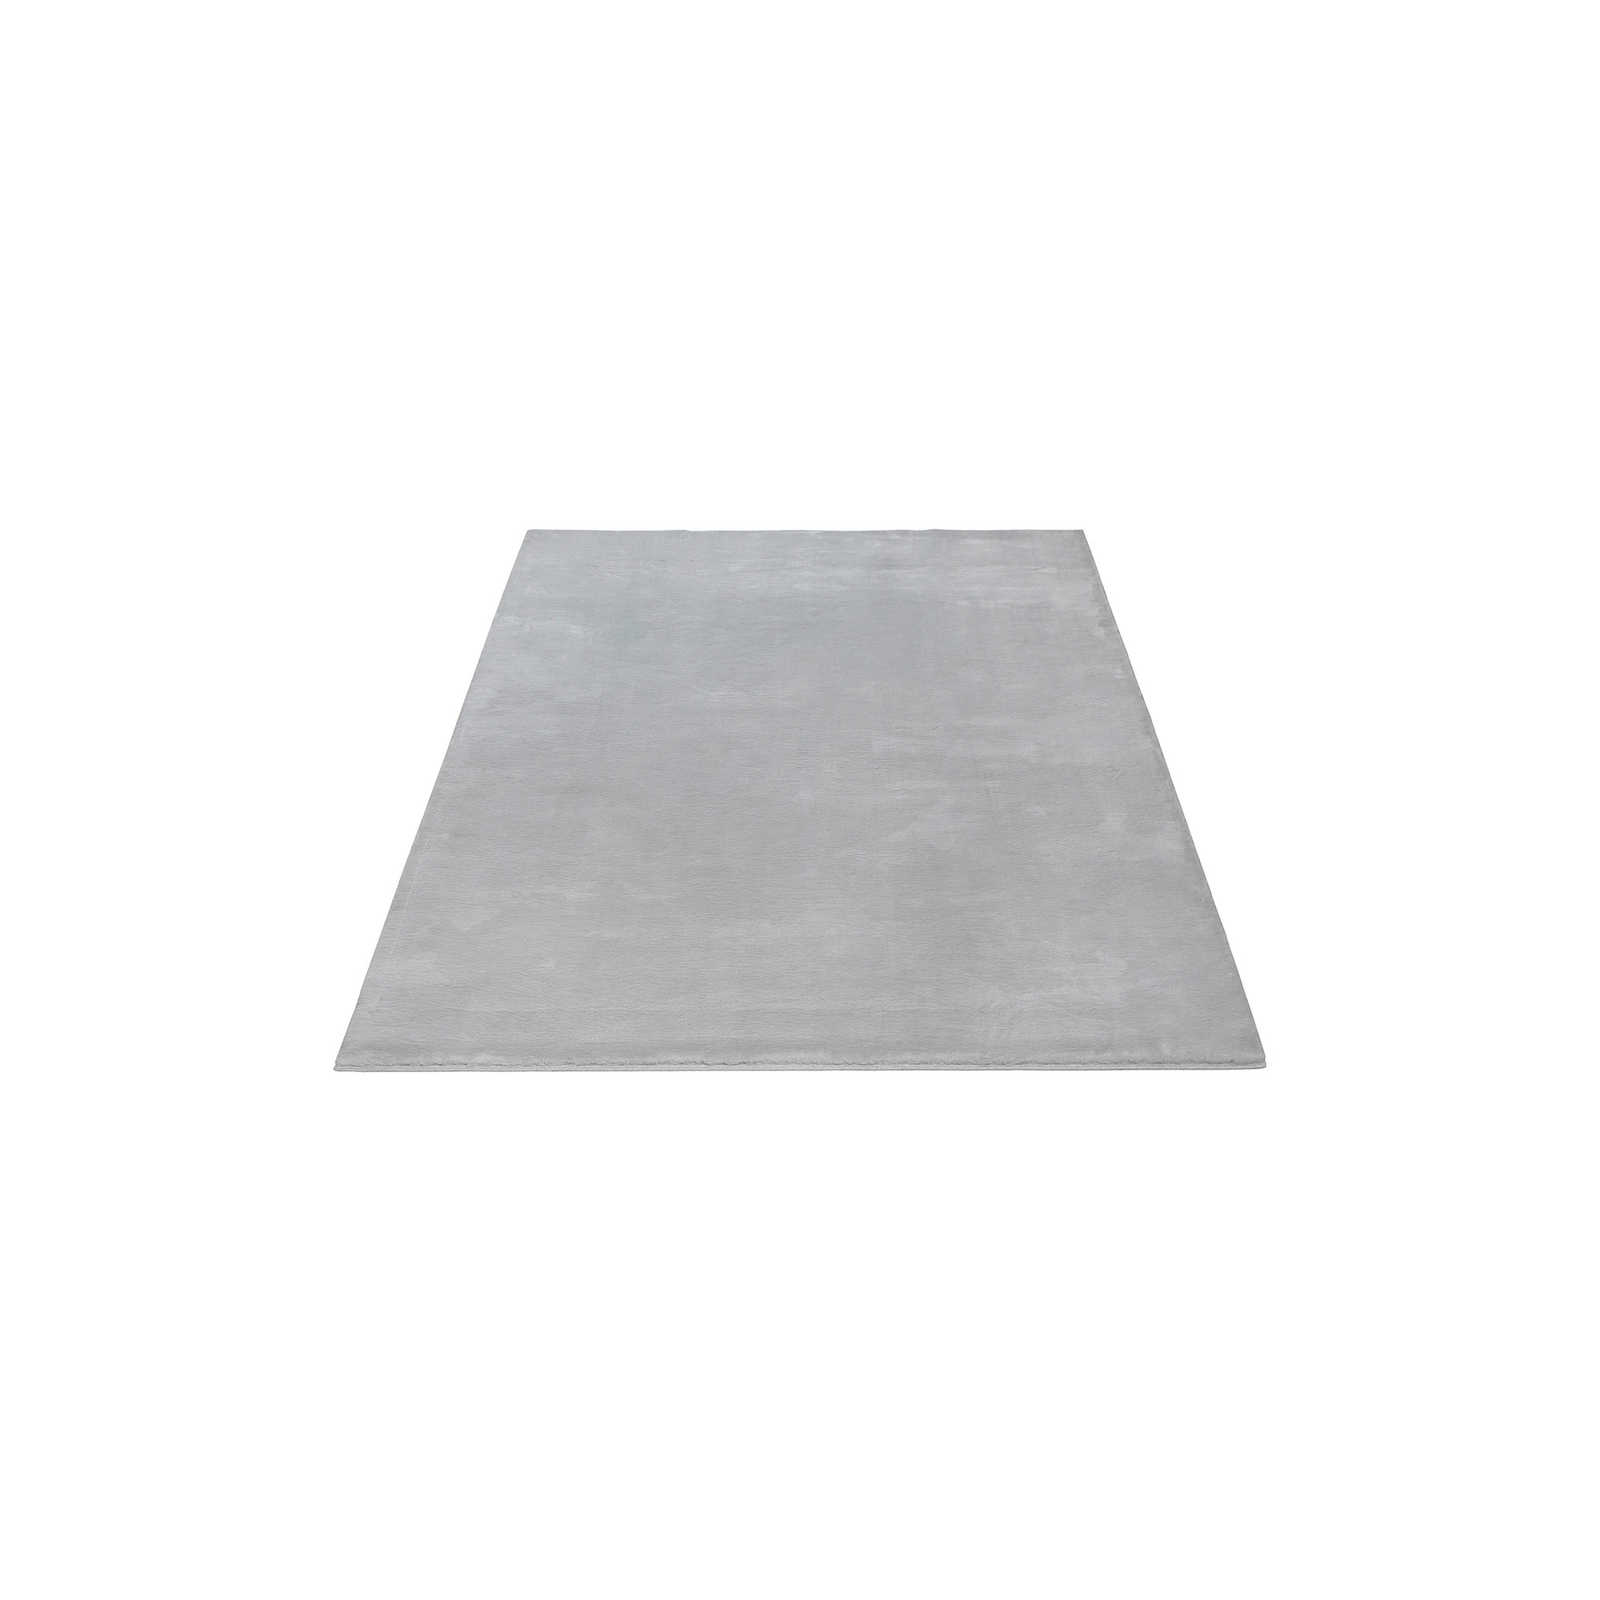 Kuscheliger Hochflor Teppich in sanften Grau – 170 x 120 cm
